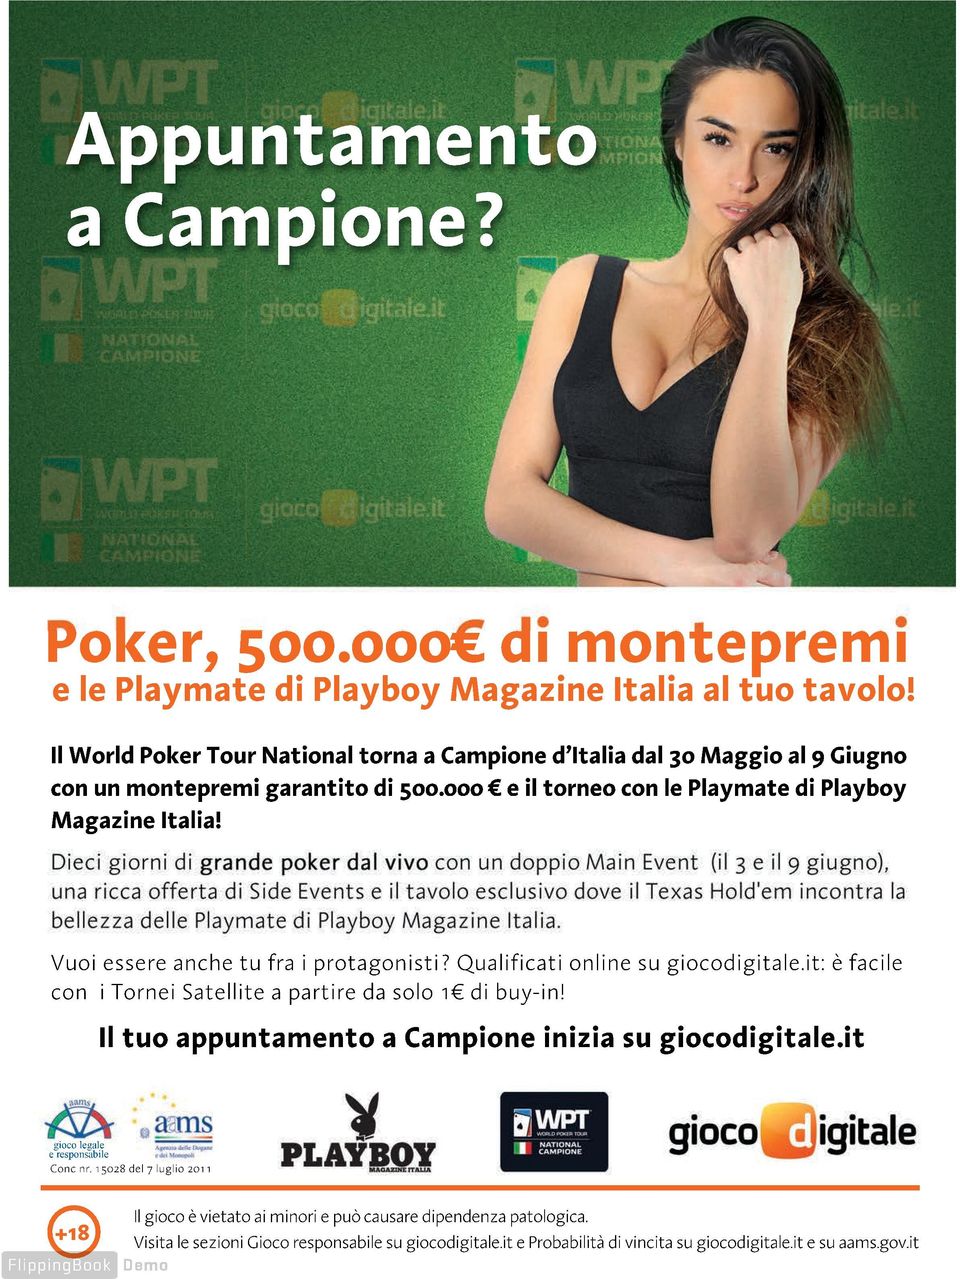 Il World Poker Tour National torna a Campione d Italia dal 30 Maggio al 9 Giugno con Il World un montepremi Poker Tour National garantito torna di 500.